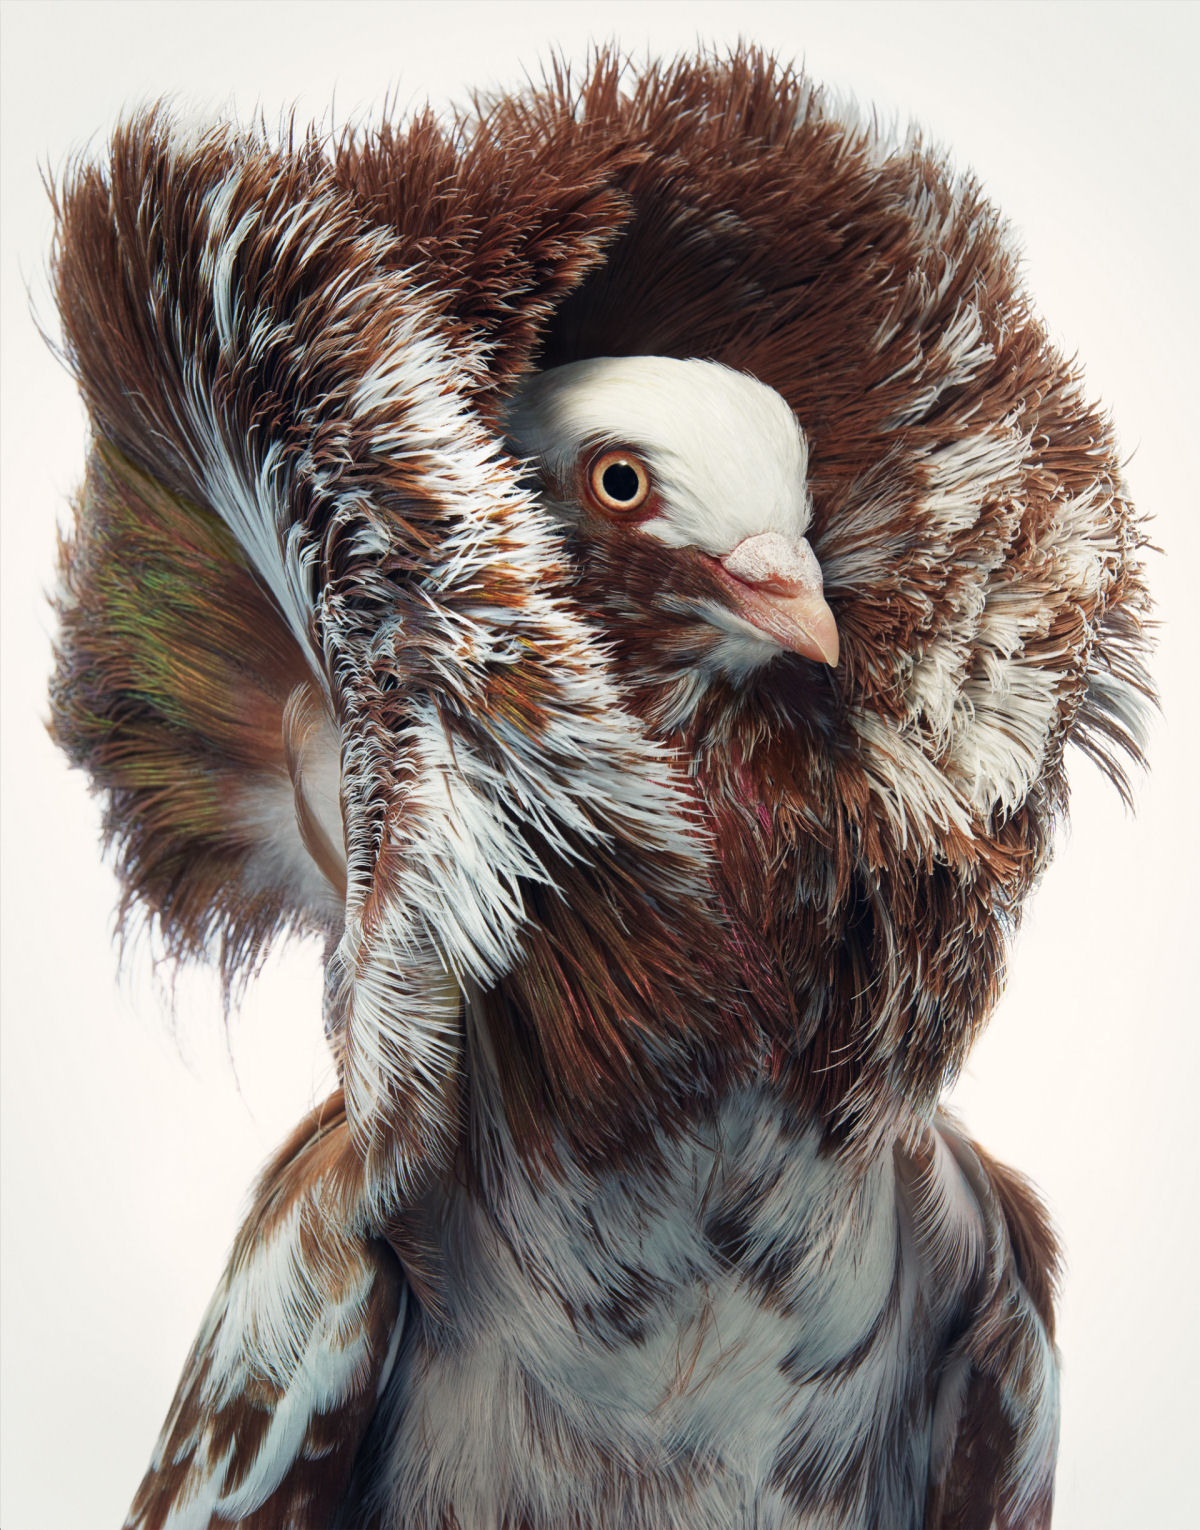 Fotógrafo londrino destaca pássaros incomuns e ameaçados de extinção em retratos impressionantes 01